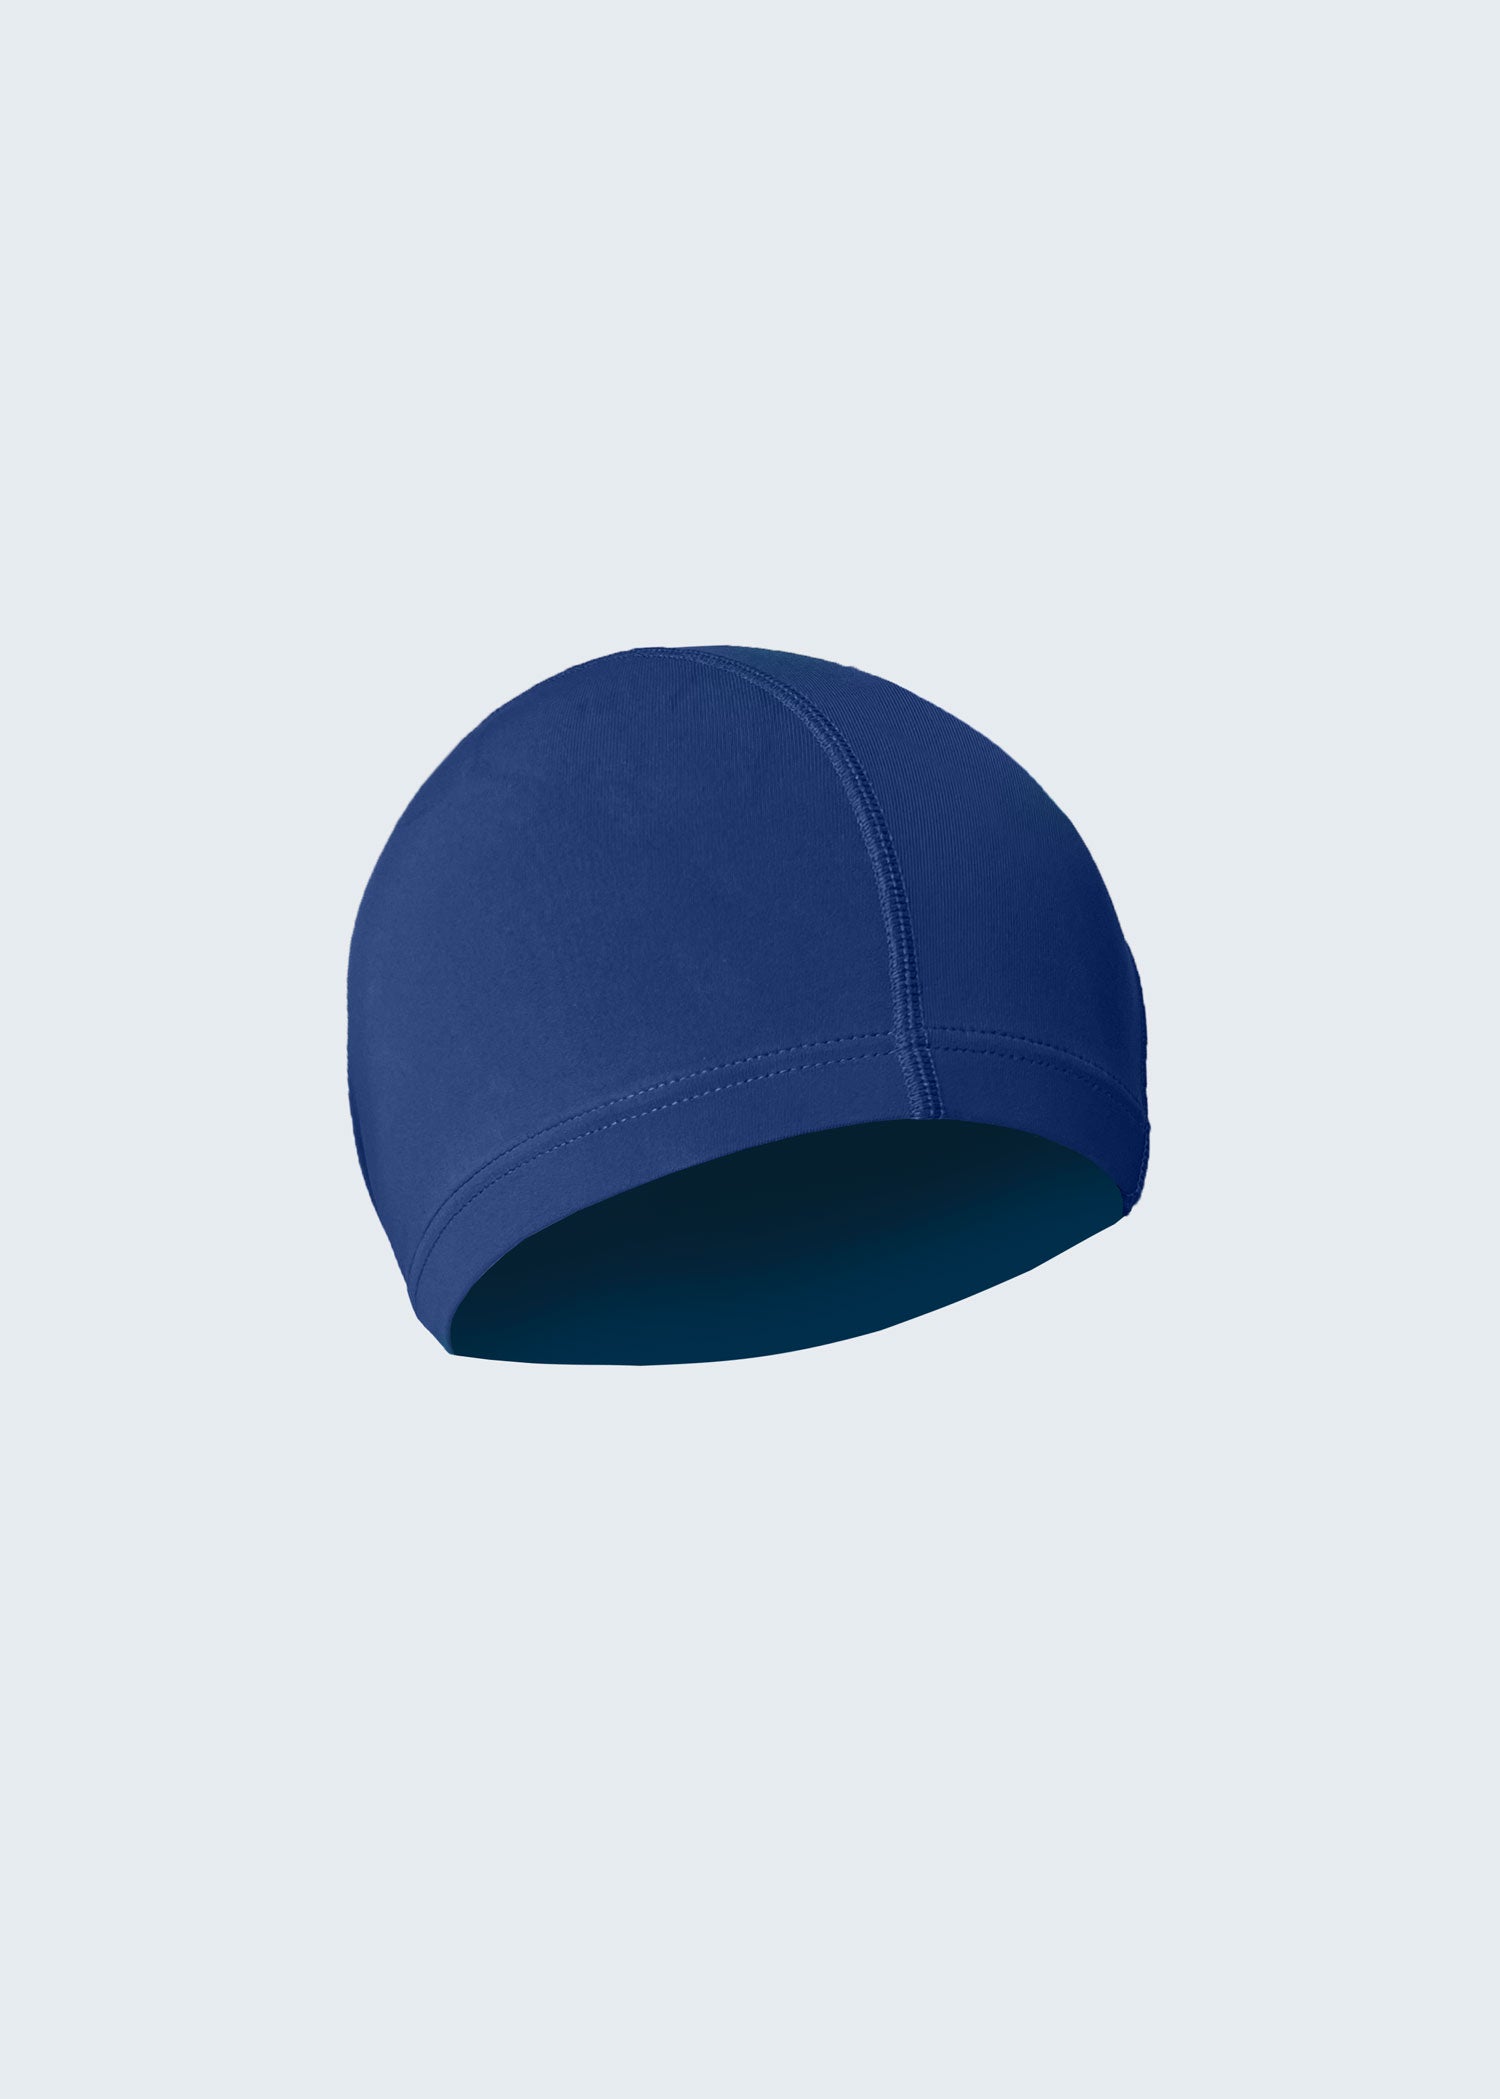 כובע ים לייקרה כחול - לויטקס Levitex